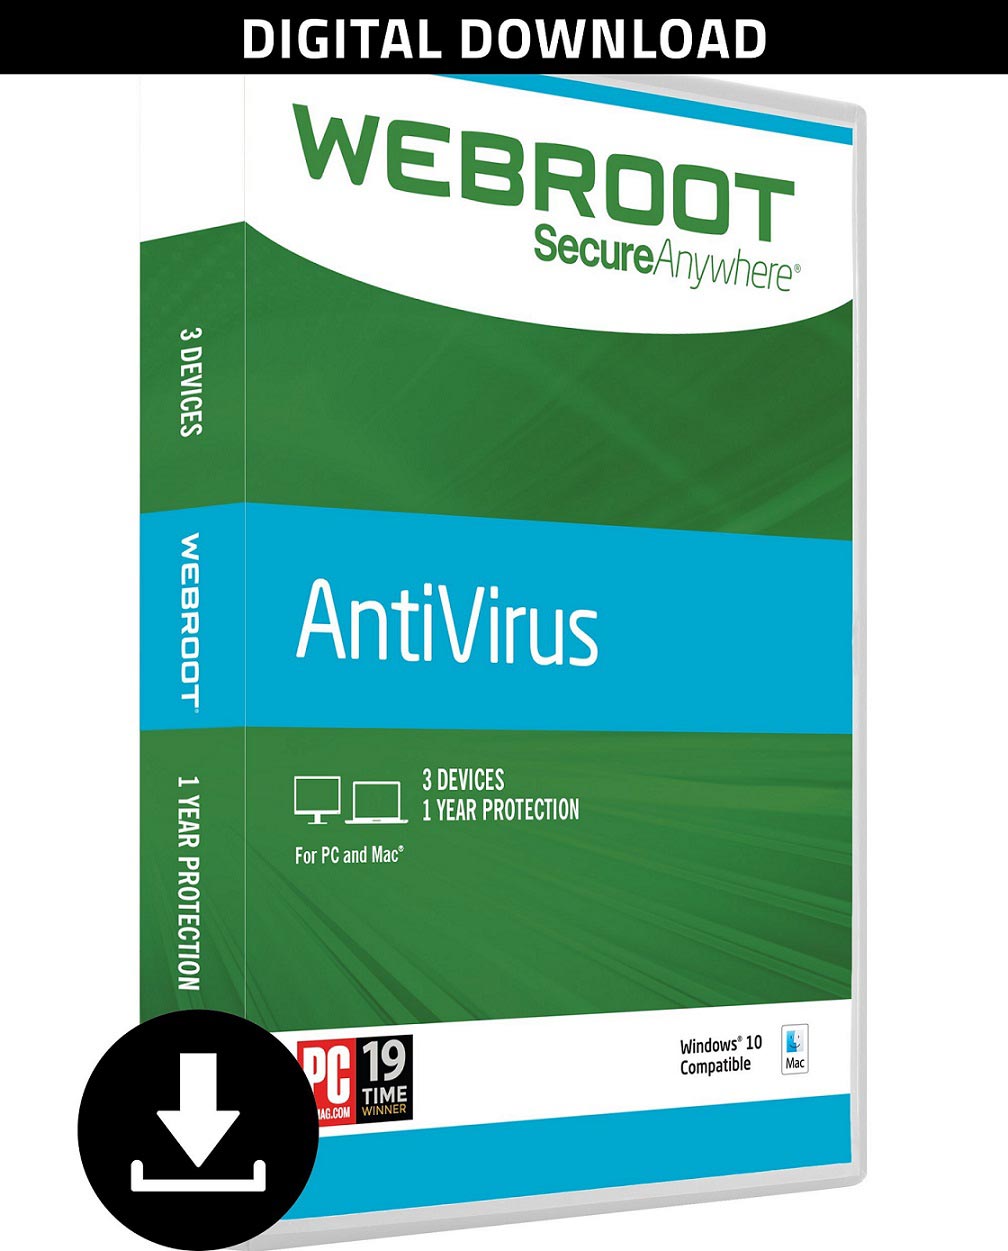 webroot sebagai antivirus terbaik yang menyediakan beberapa fitur